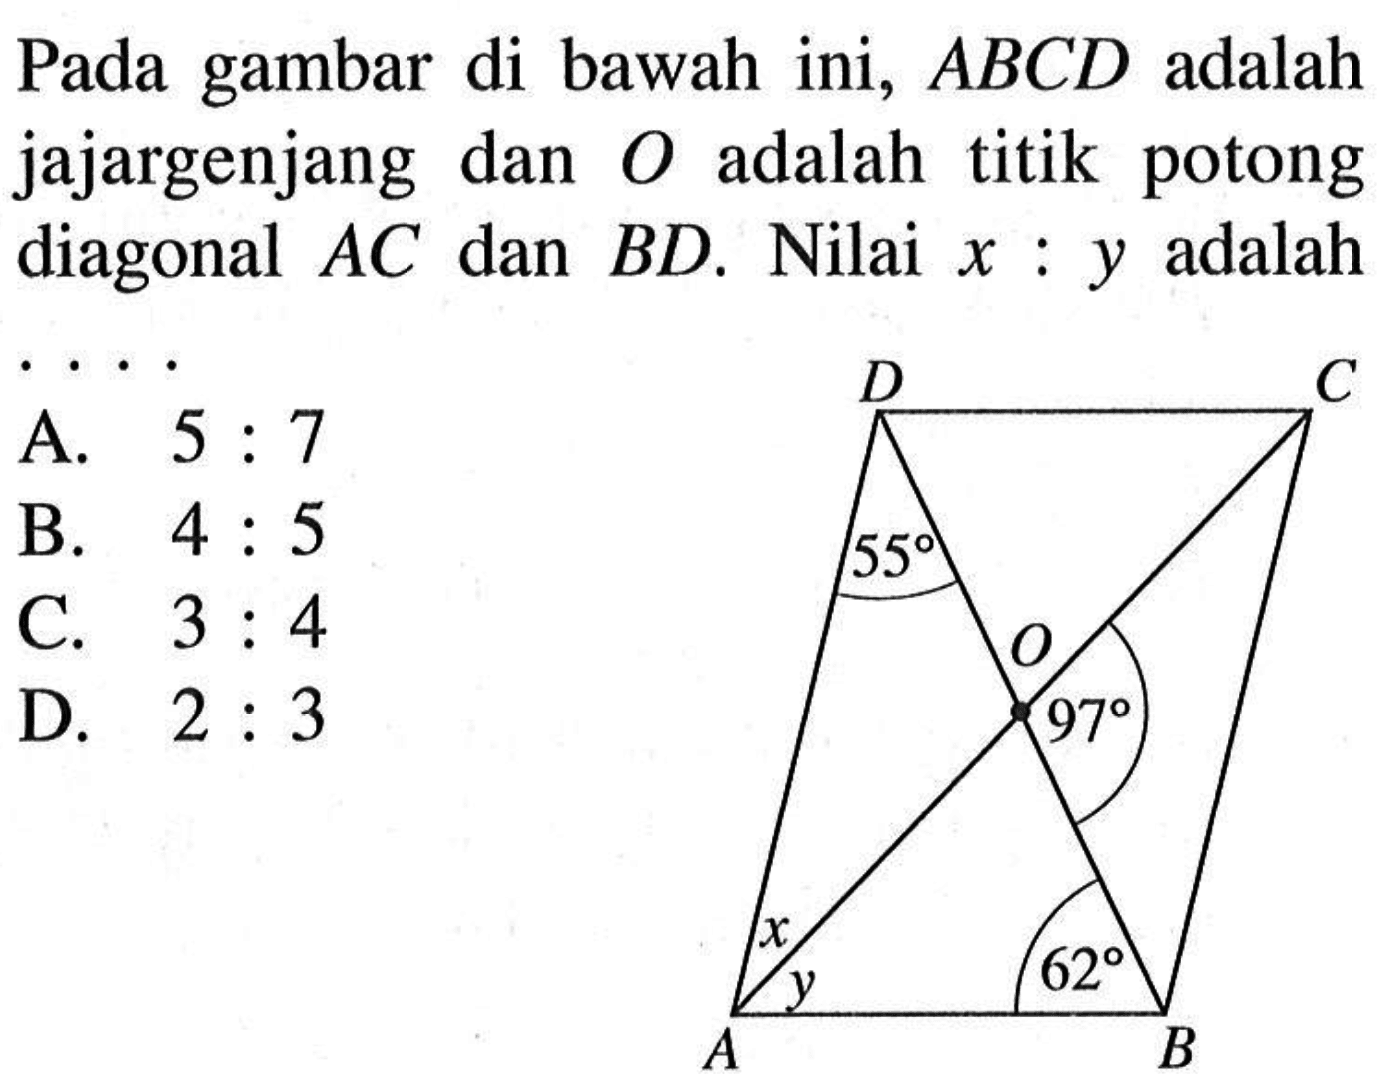 Pada gambar di bawah ini,  ABCD  adalah jajargenjang dan  O  adalah titik potong diagonal  AC  dan  BD. Nilai  x:y  adalah....D C55O 97x y 62